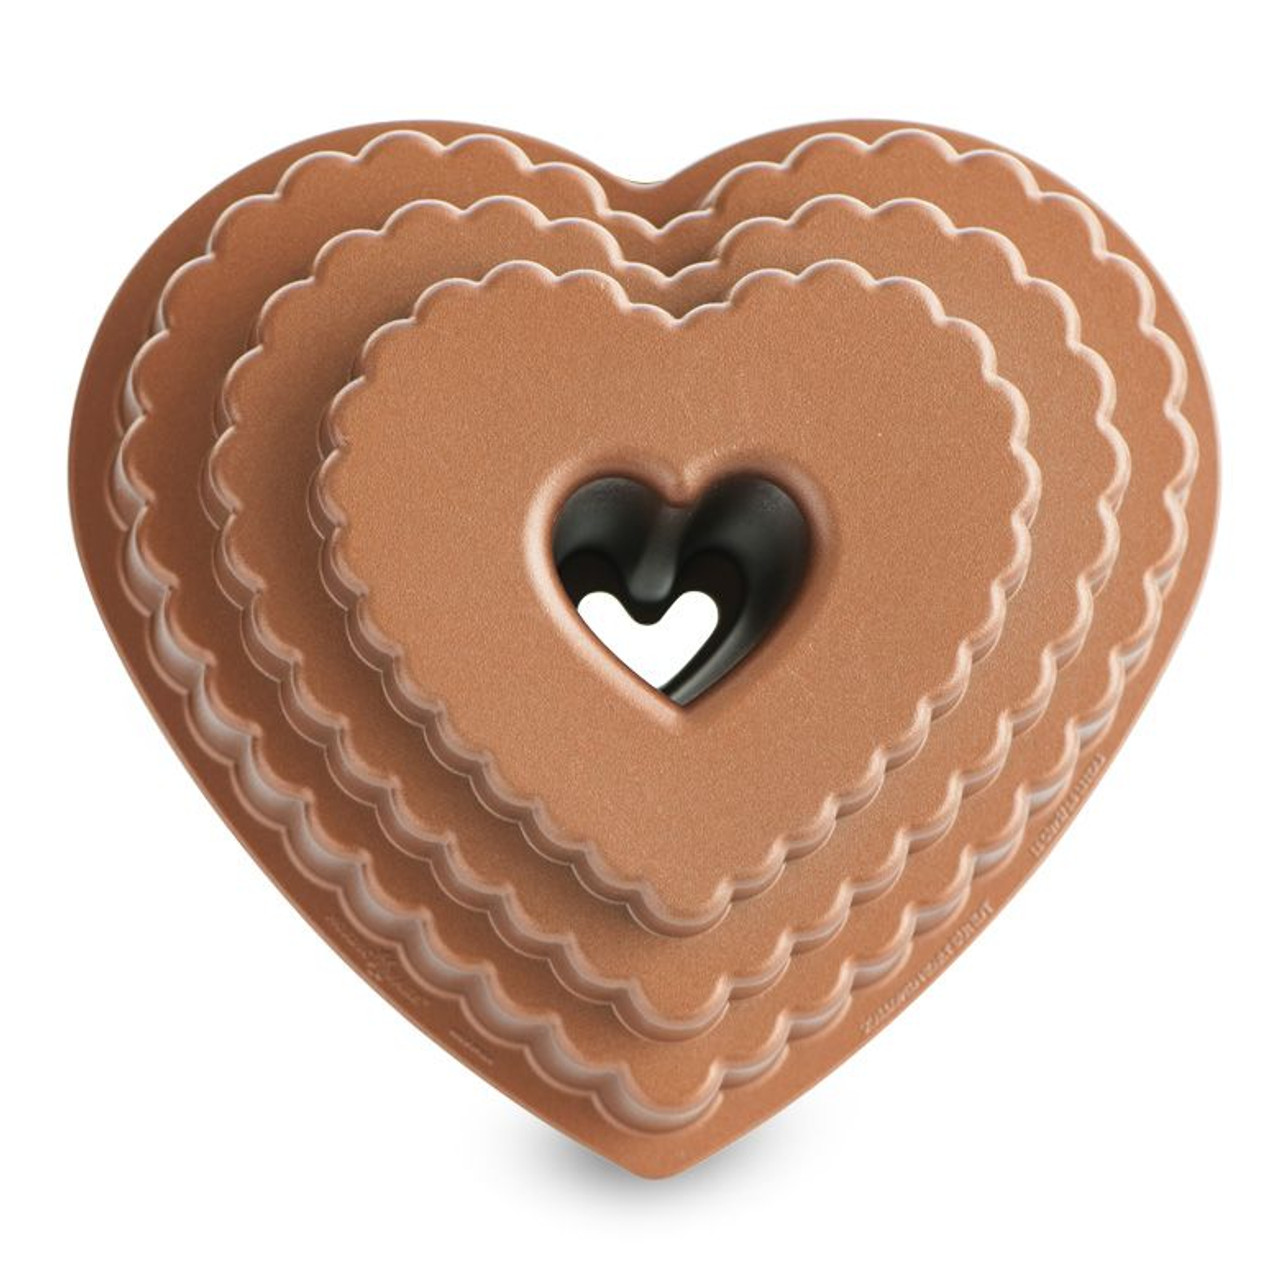 Tiered Heart Bundt Pan - Nordic Ware